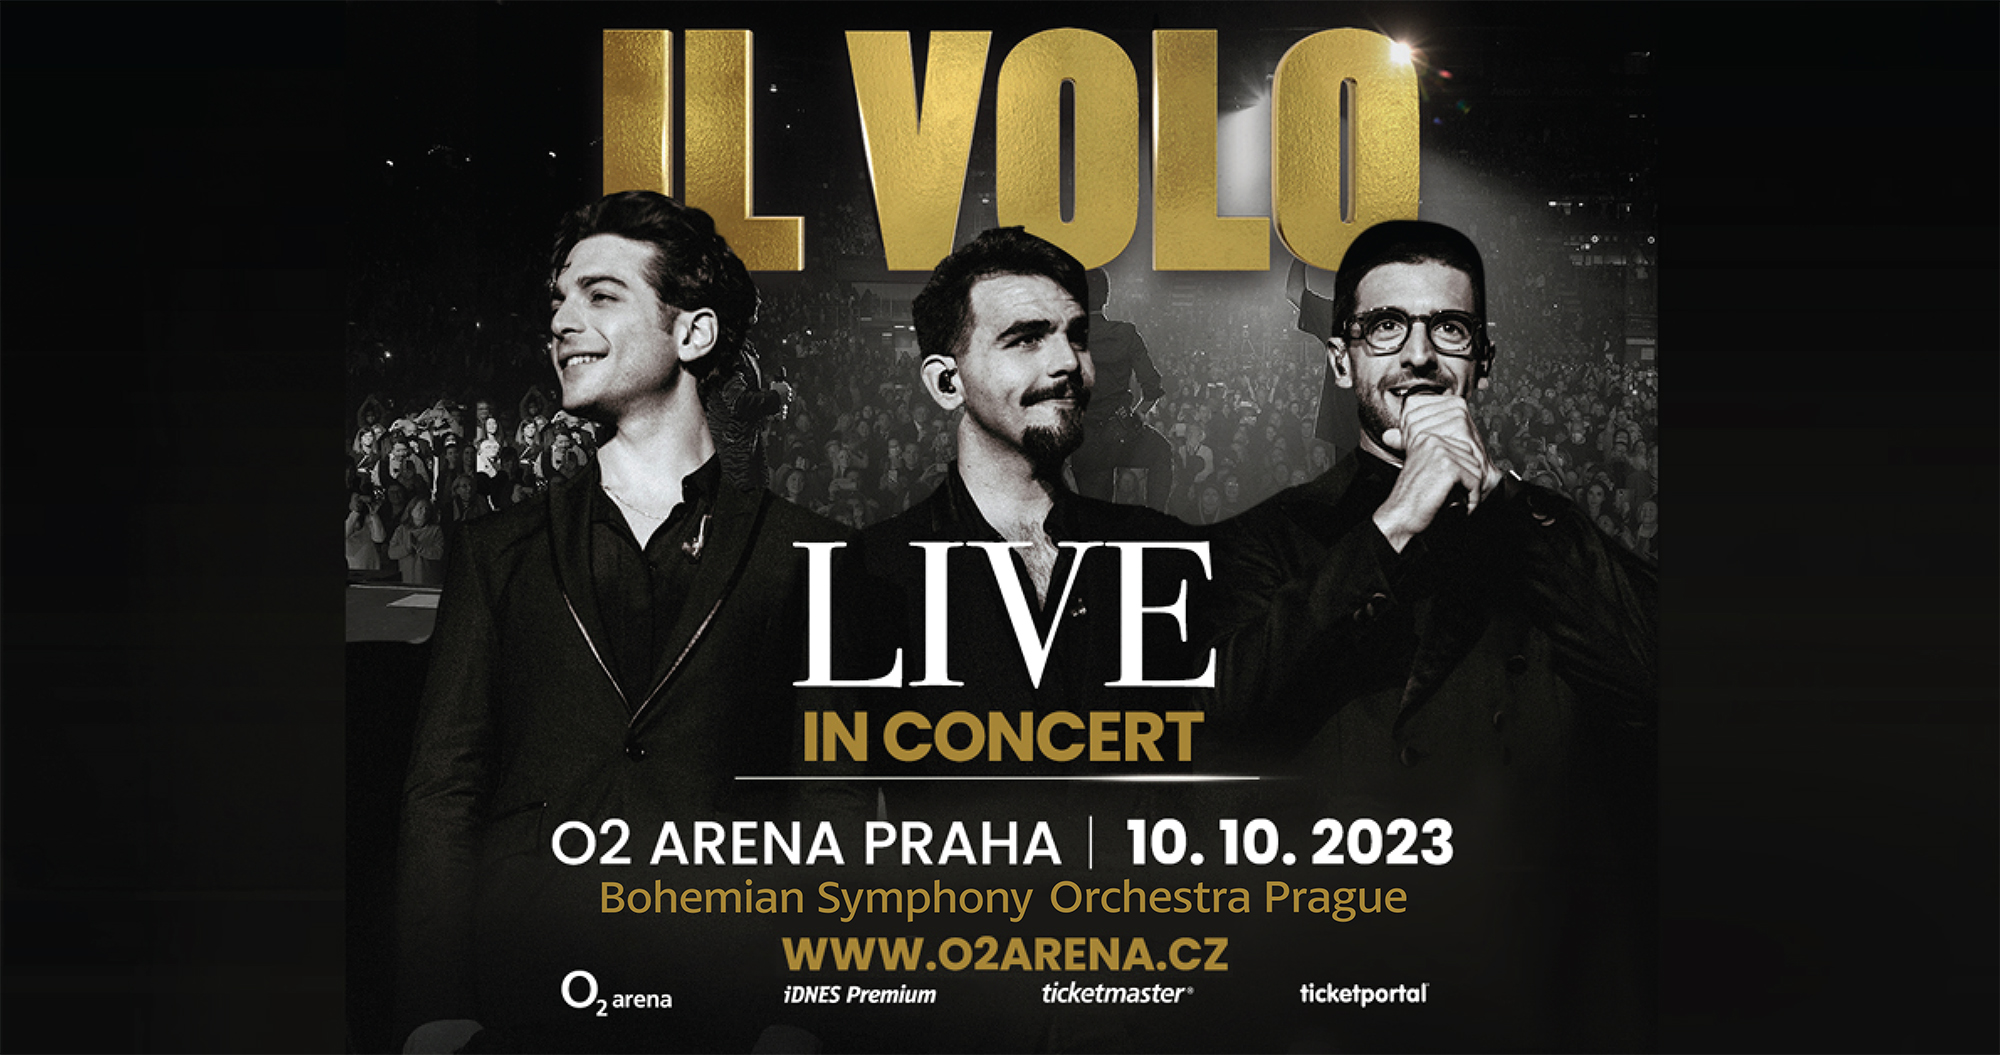 Il Volo Live in Concert 10.10.2023 O2 Arena Praha